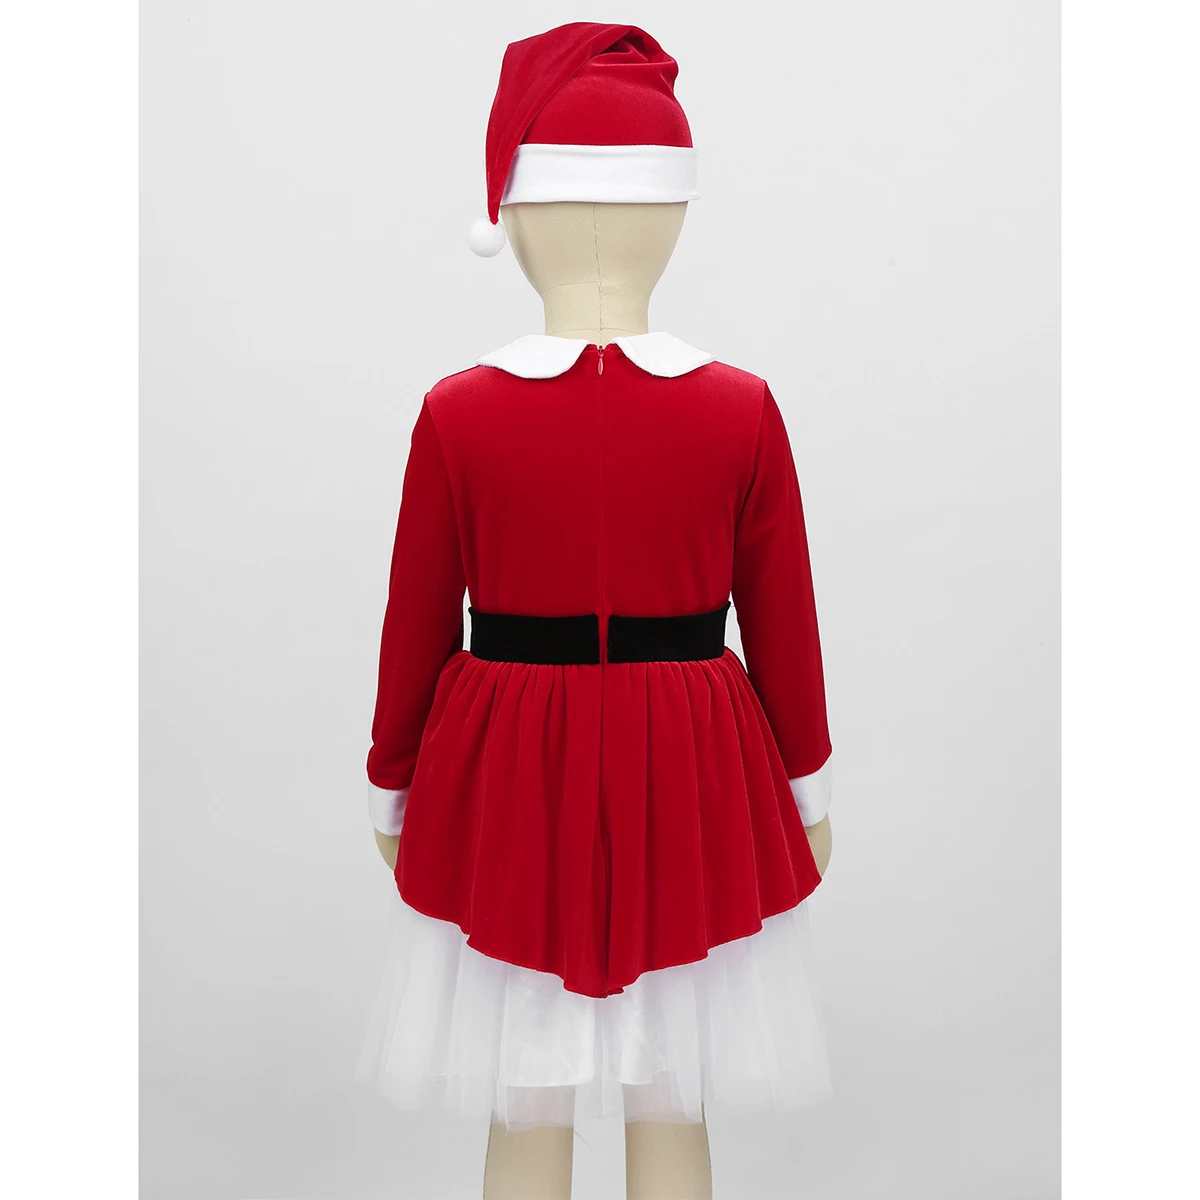 Детский красный костюм Санта-Клауса для девочек, одежда для костюмированной вечеринки на Рождество, мягкий бархатный с длинными рукавами, декоративное Сетчатое платье с поясом и шляпой